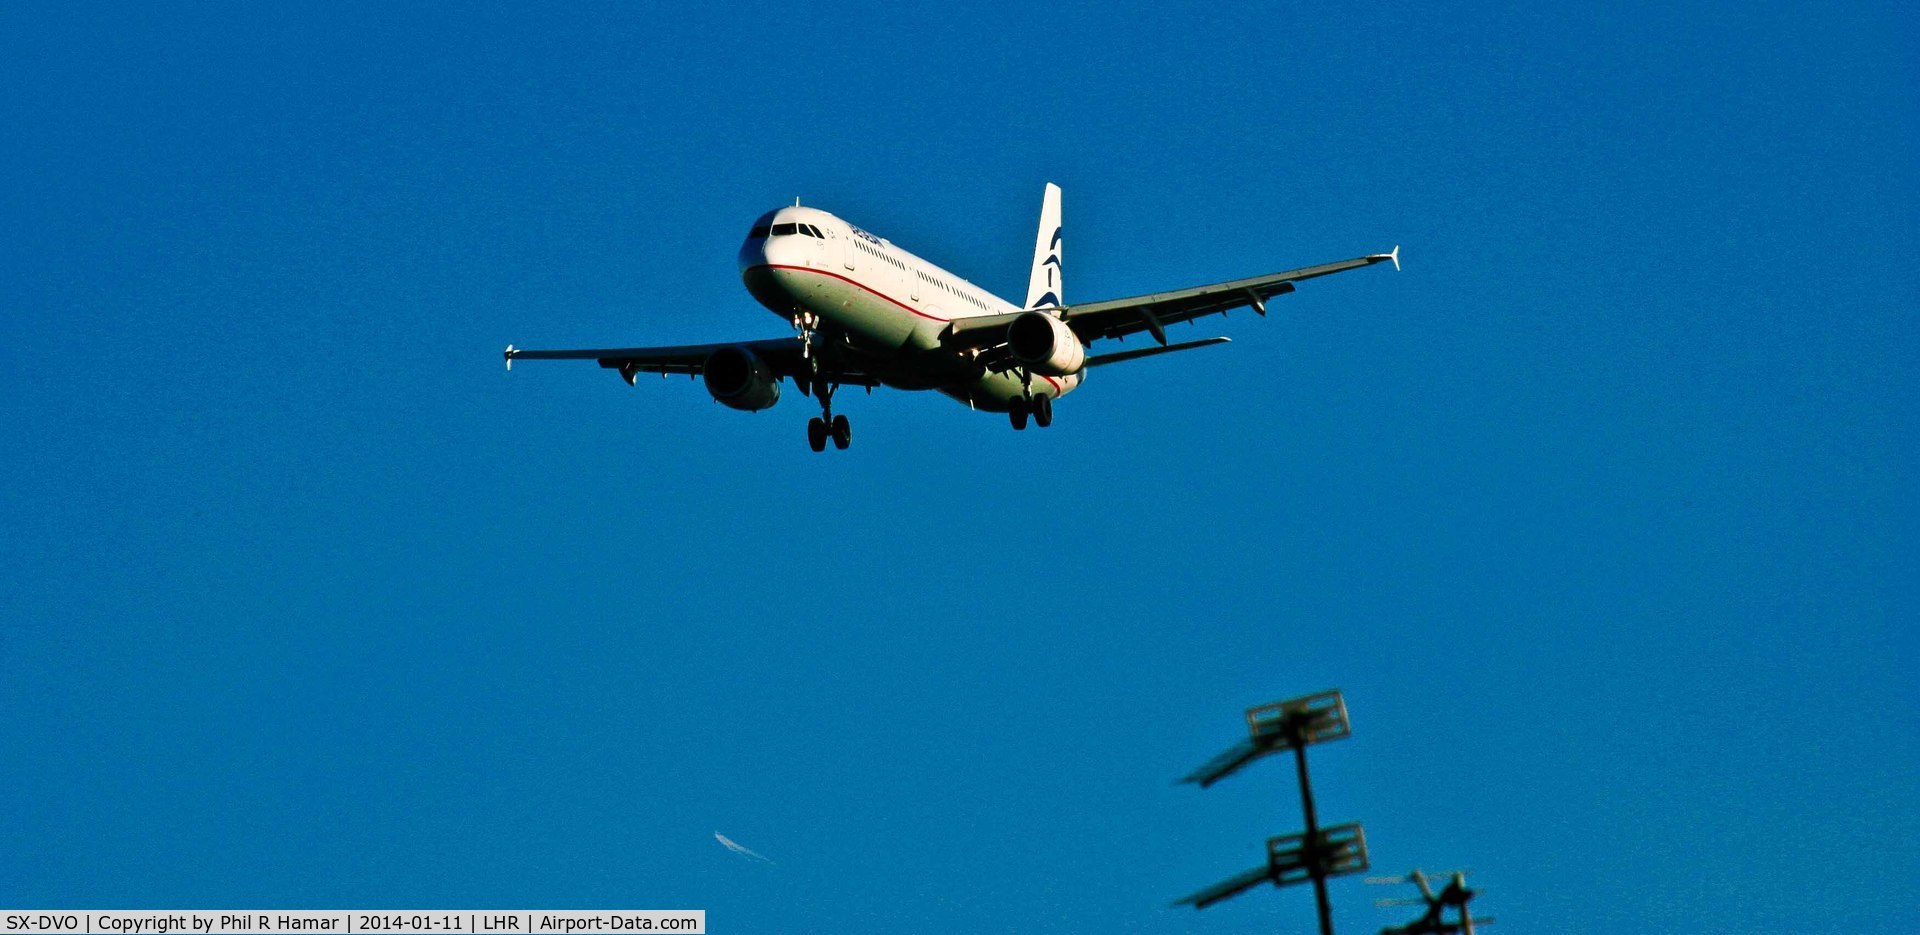 SX-DVO, 2008 Airbus A321-231 C/N 3462, Aegean Air, (SX-DVO) 2008 Airbus A321-231, c/n 3462, on approach to land on 27L Heathrow. © PhilRHama